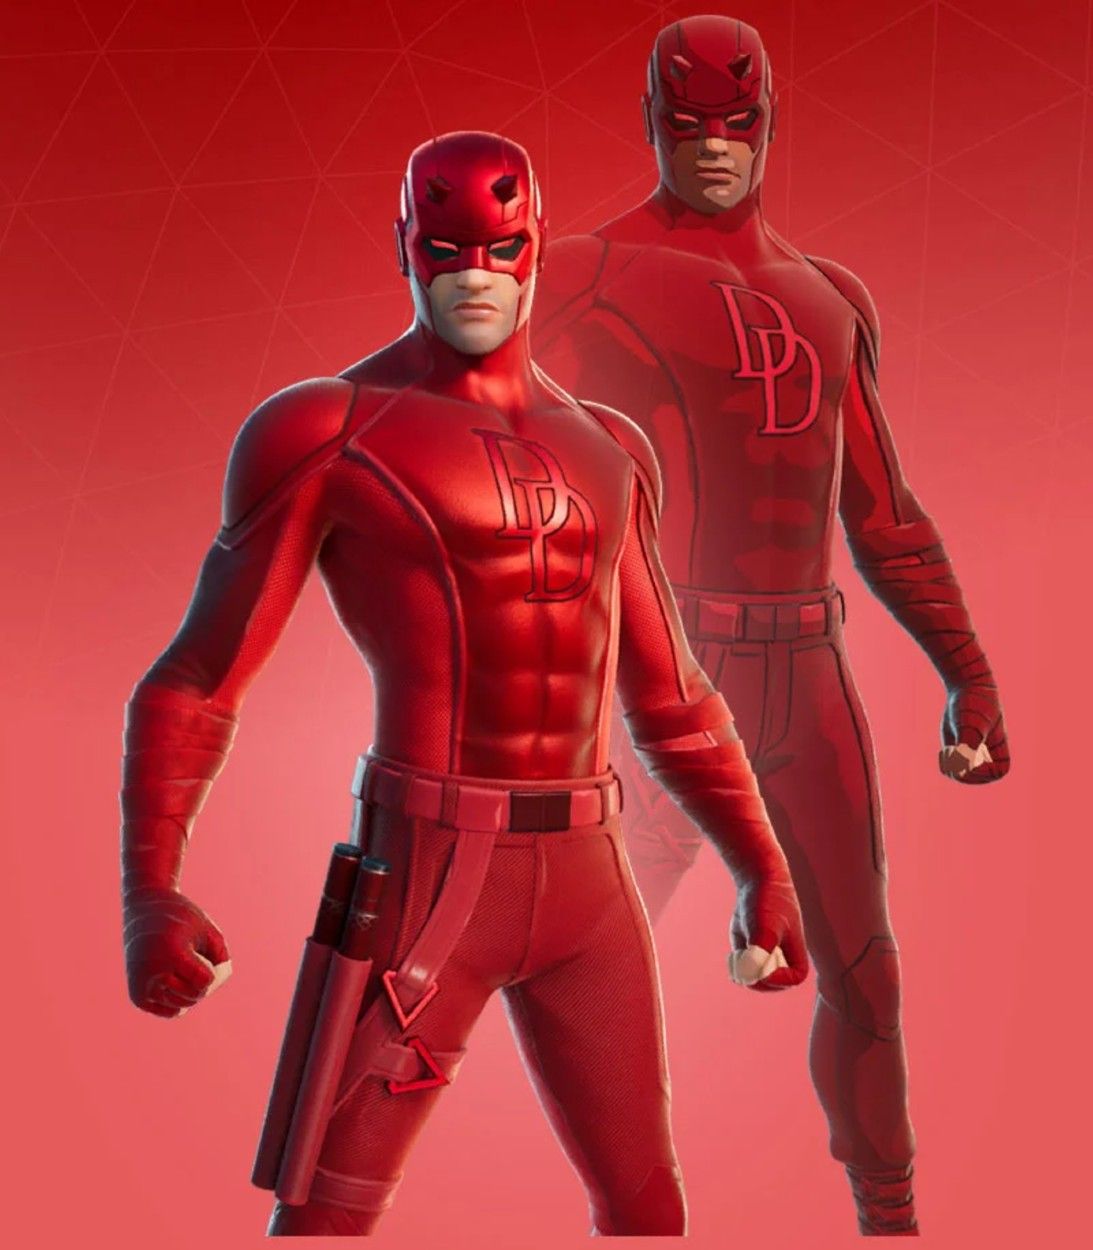 The new Daredevil skin in Fortnite Season 4